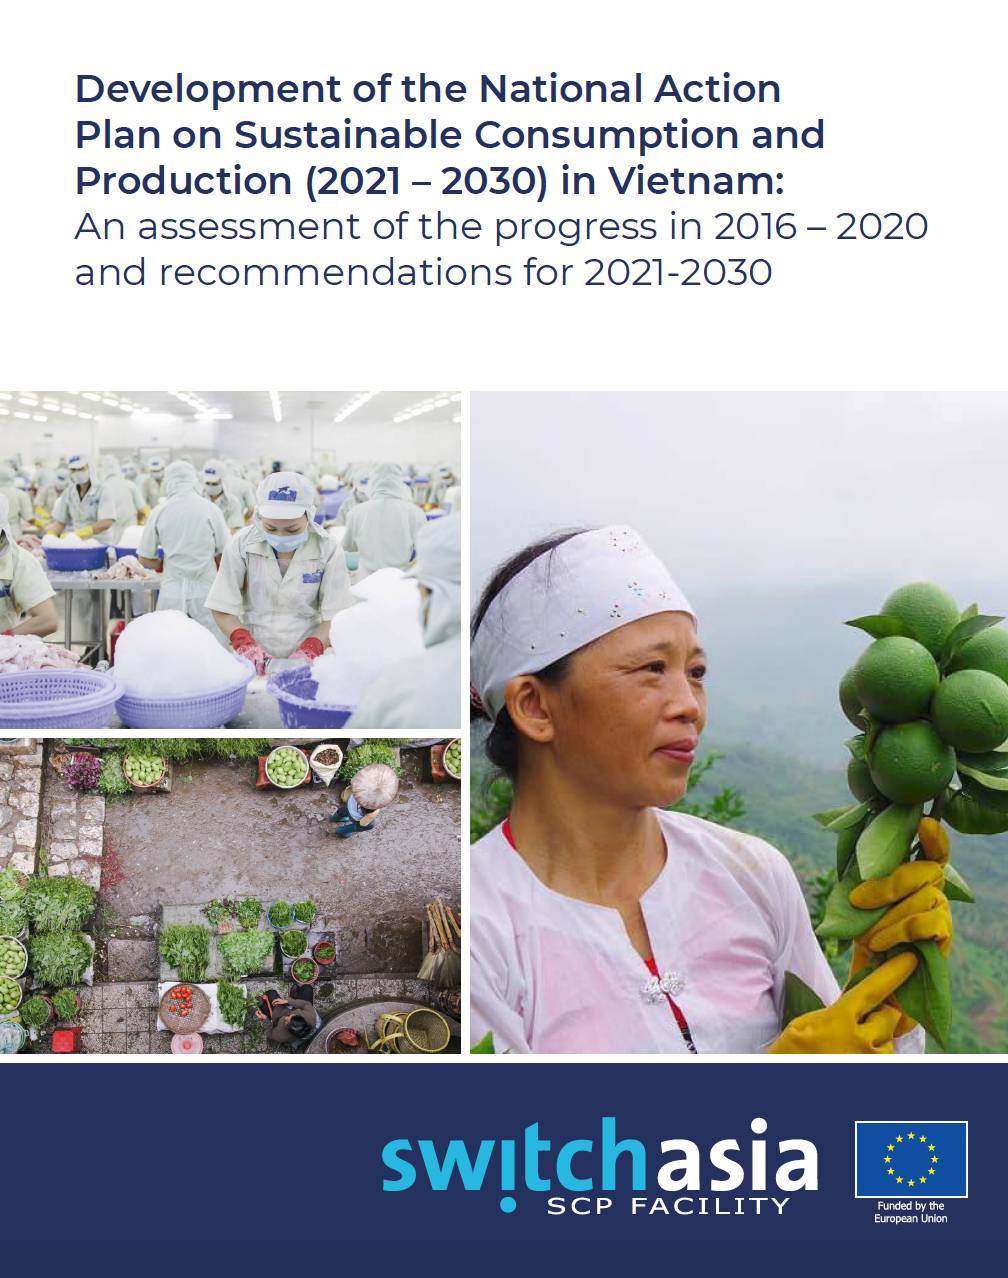 Assessment of SCP Progress in Vietnam (2016-2020)